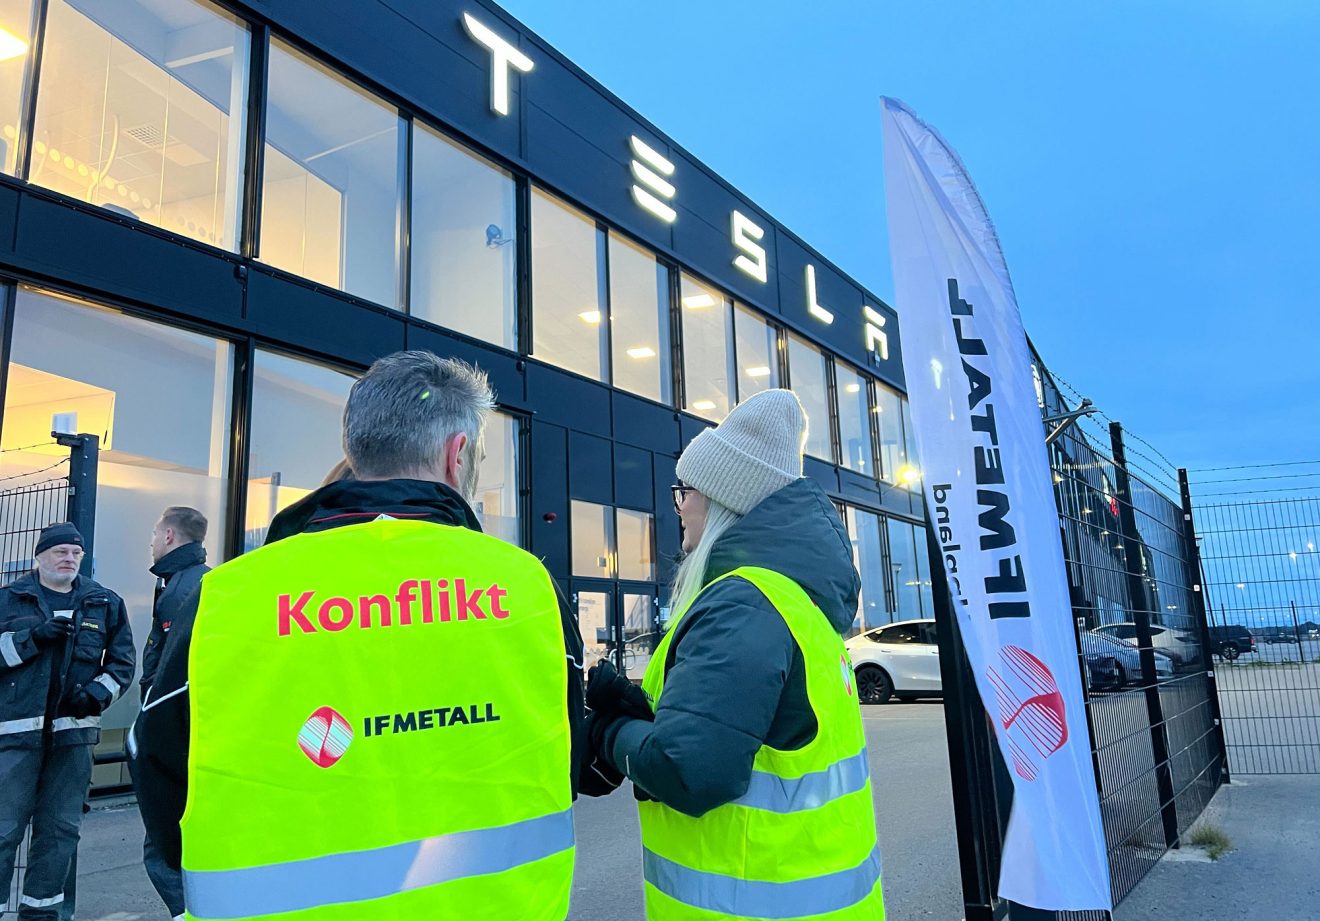 A Uppsala c'è uno dei laboratori Tesla dove IF Metall ha scioperato.